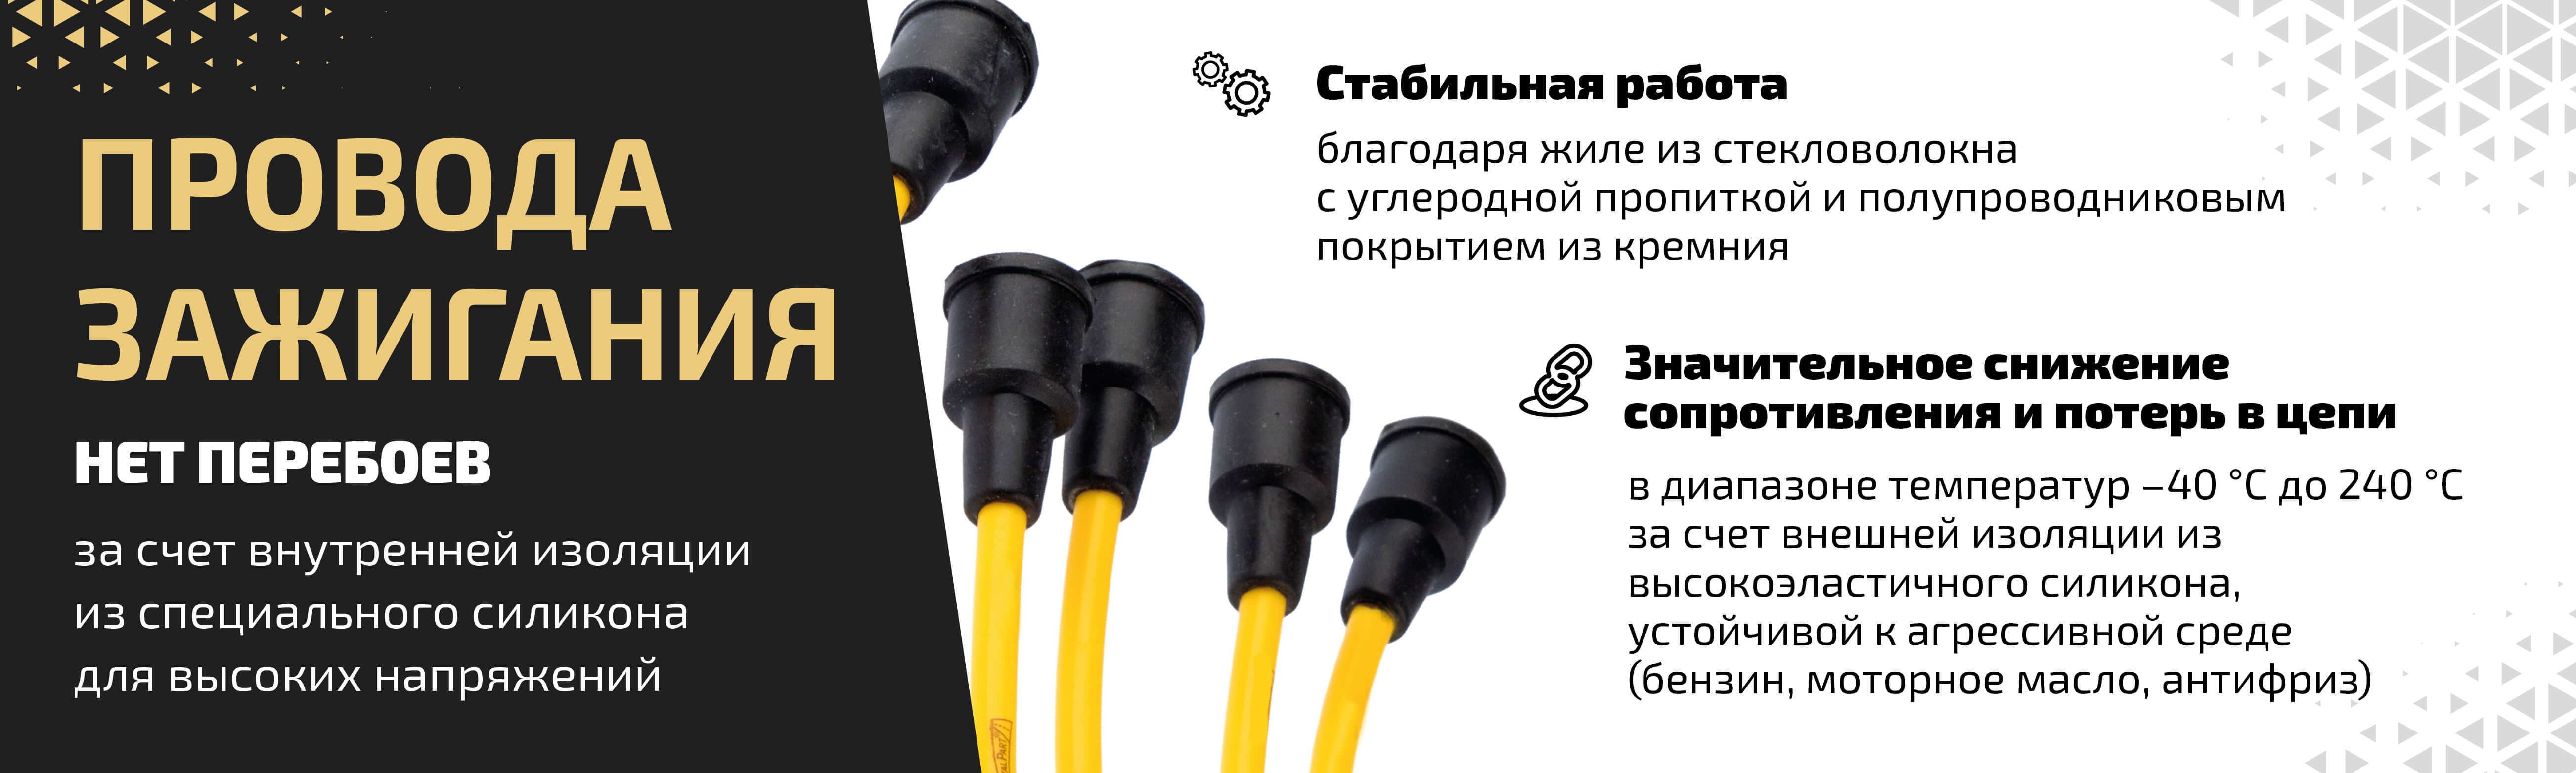 Провода высоковольтные для ГАЗ и УАЗ ⚙ — купить в Санкт-Петербурге, цены в Metalpart.ru